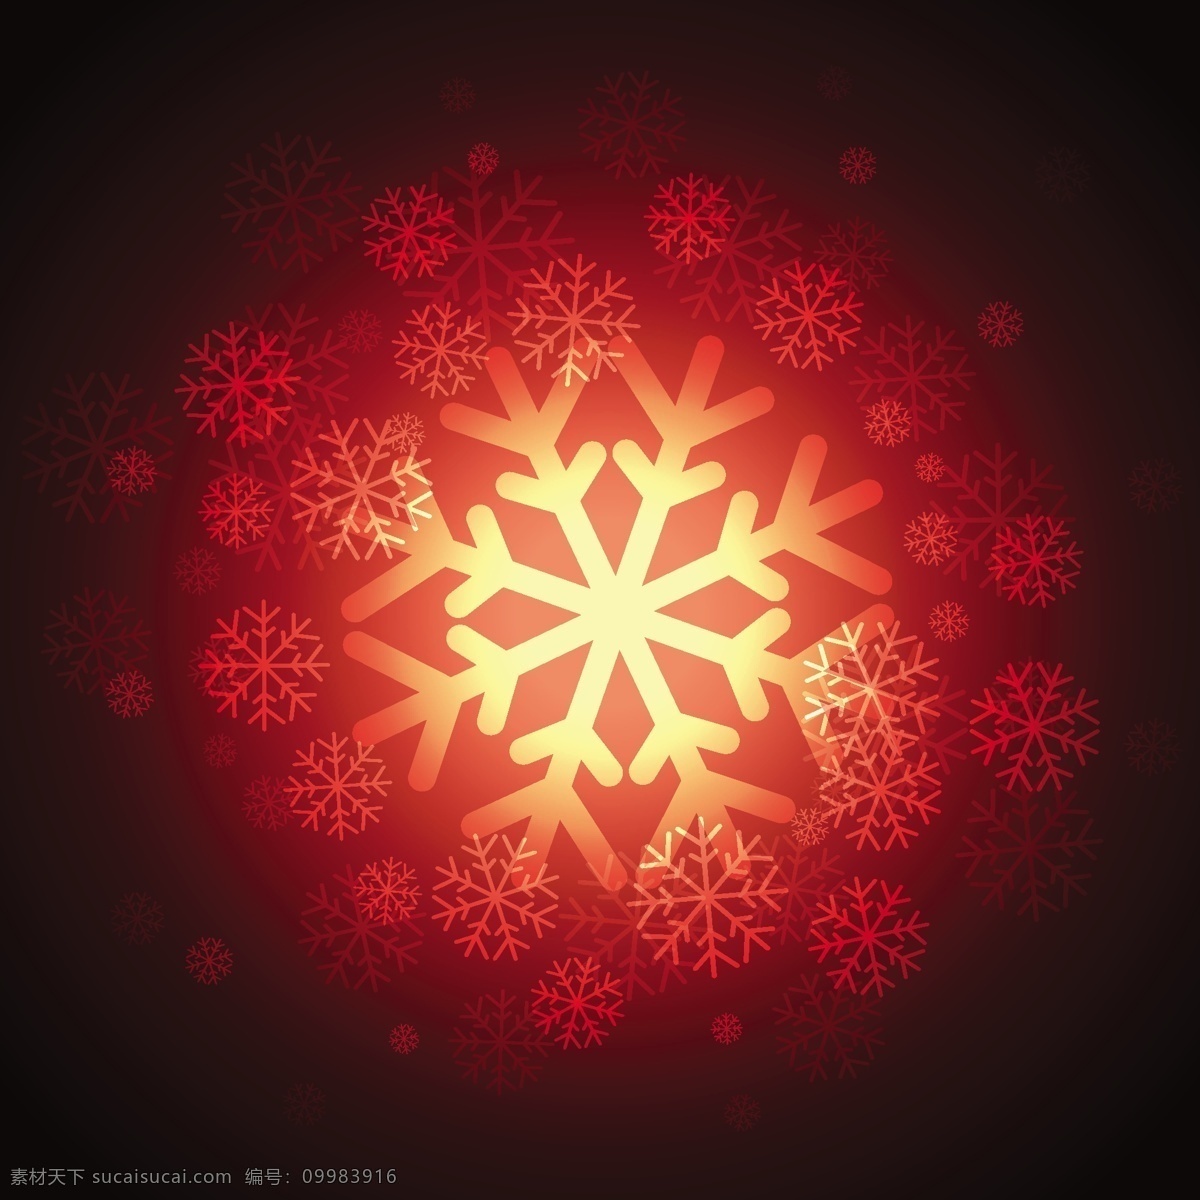 明亮 红色 雪花 背景 圣诞节 抽象 几何 雪 圣诞快乐 冬天快乐 庆祝 节日 节日快乐 寒冷 季节 有光泽 十二月 黑色